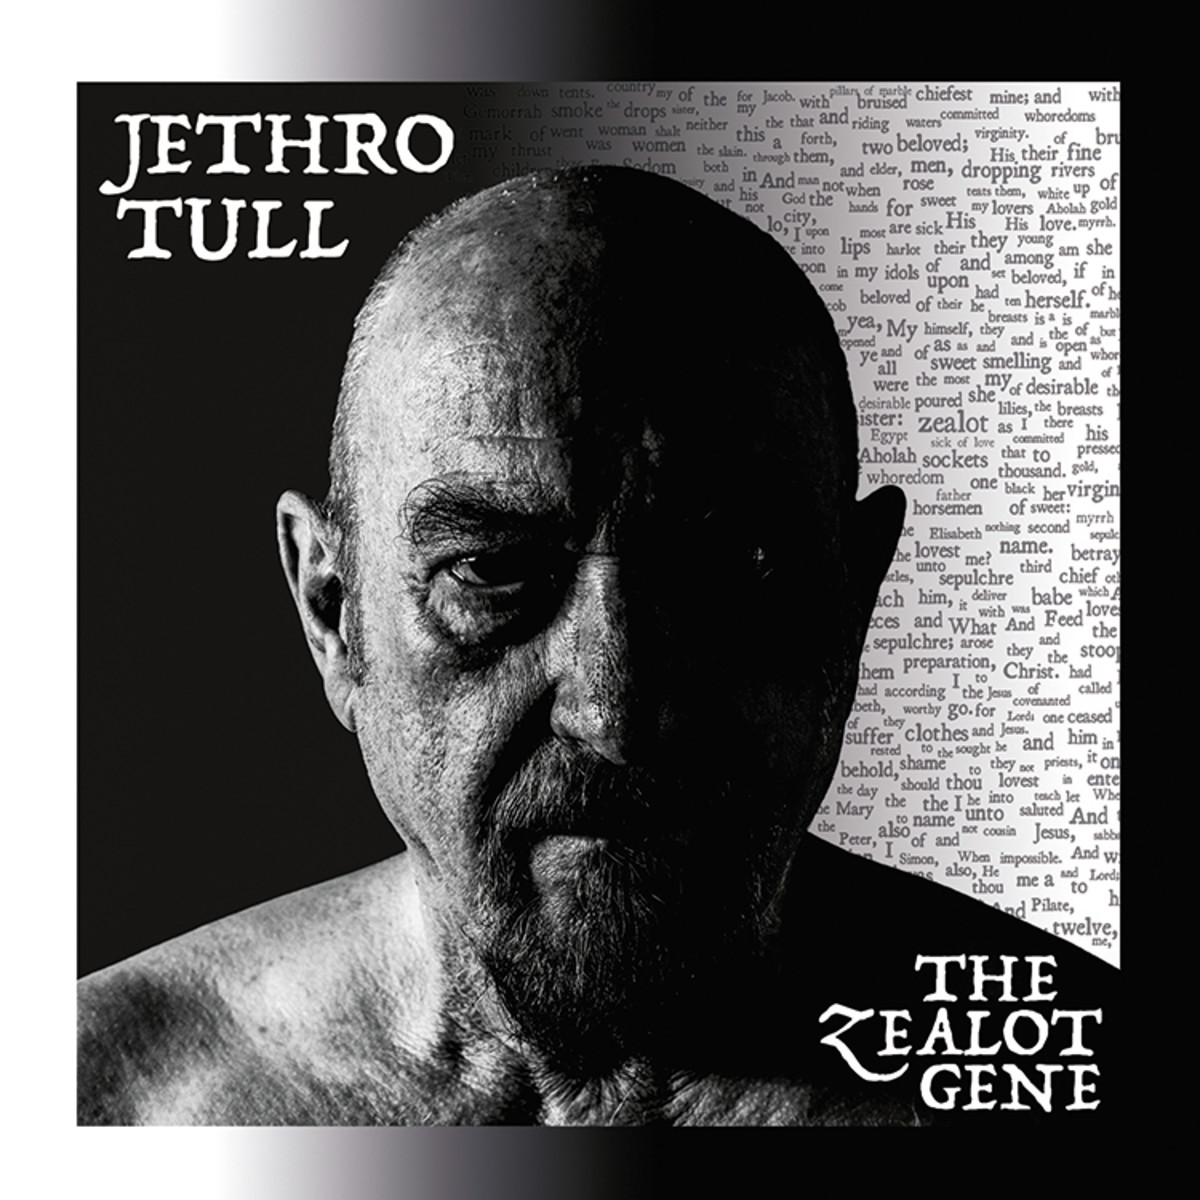 Tull Zealot Gene Cover Art_c